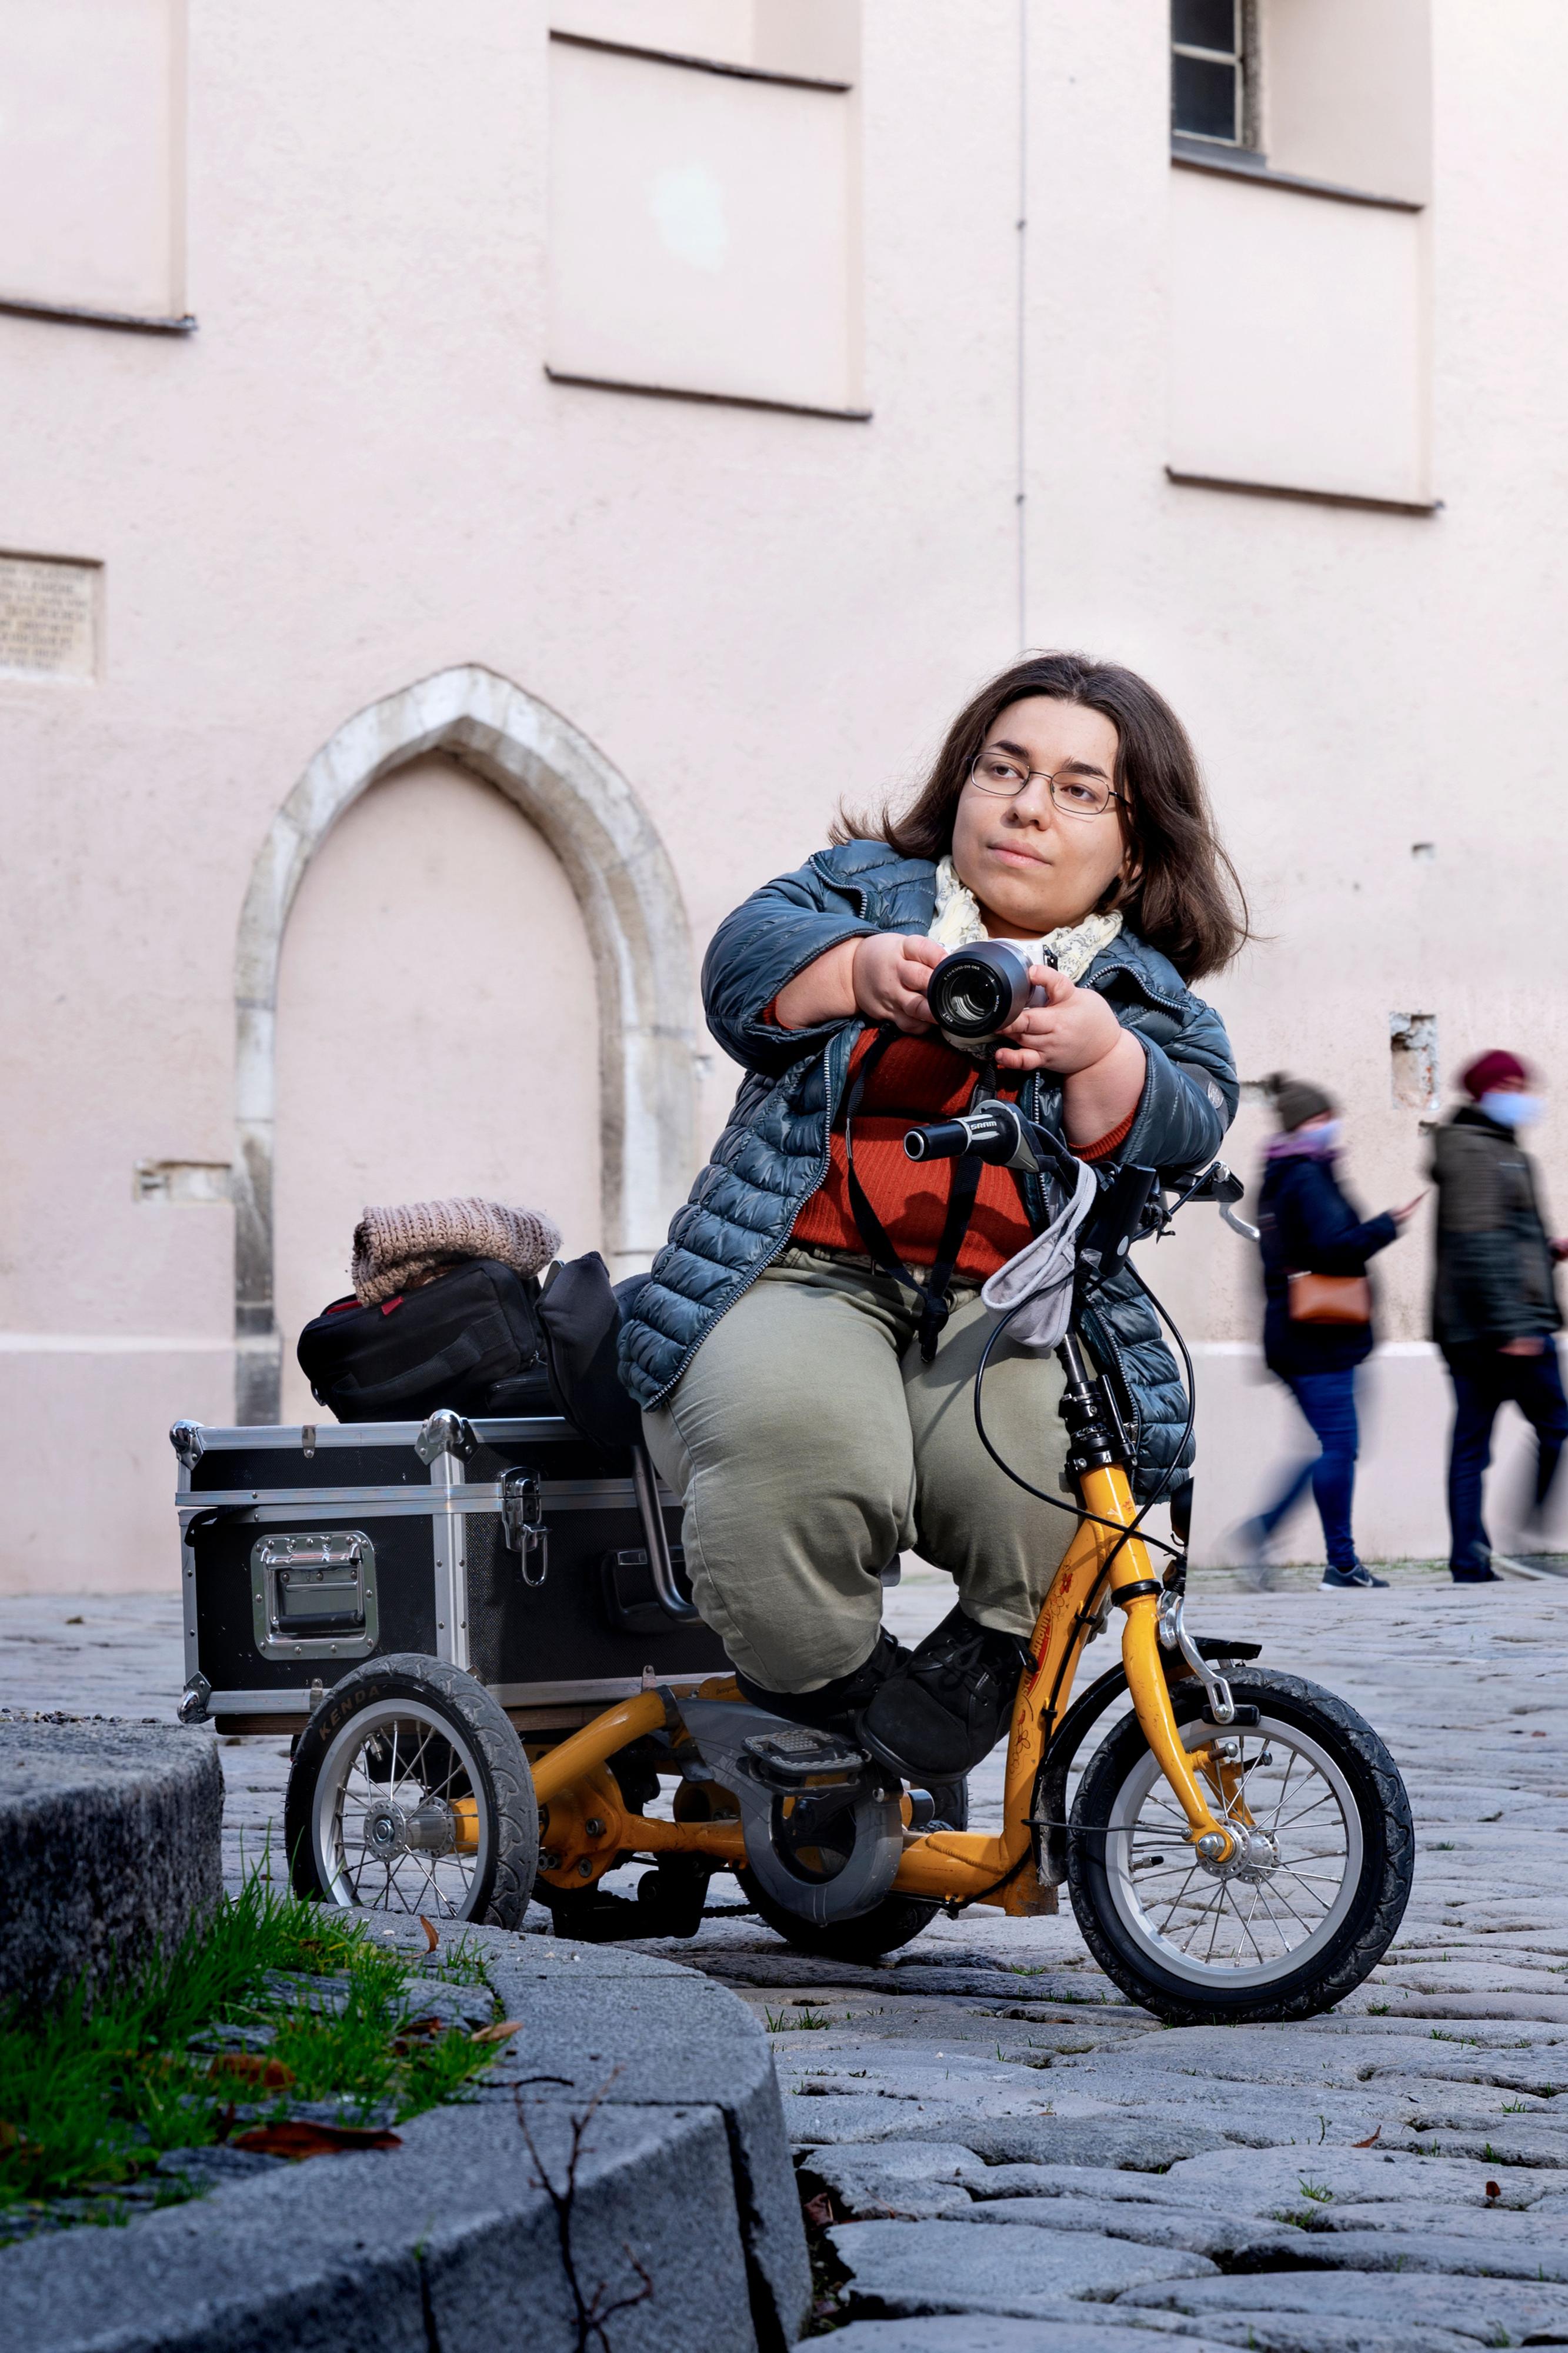 Eine kleinwüchsige Frau auf einem Roller steht auf einem Platz in der Stadt. Sie hält eine Kamera in der Hand.